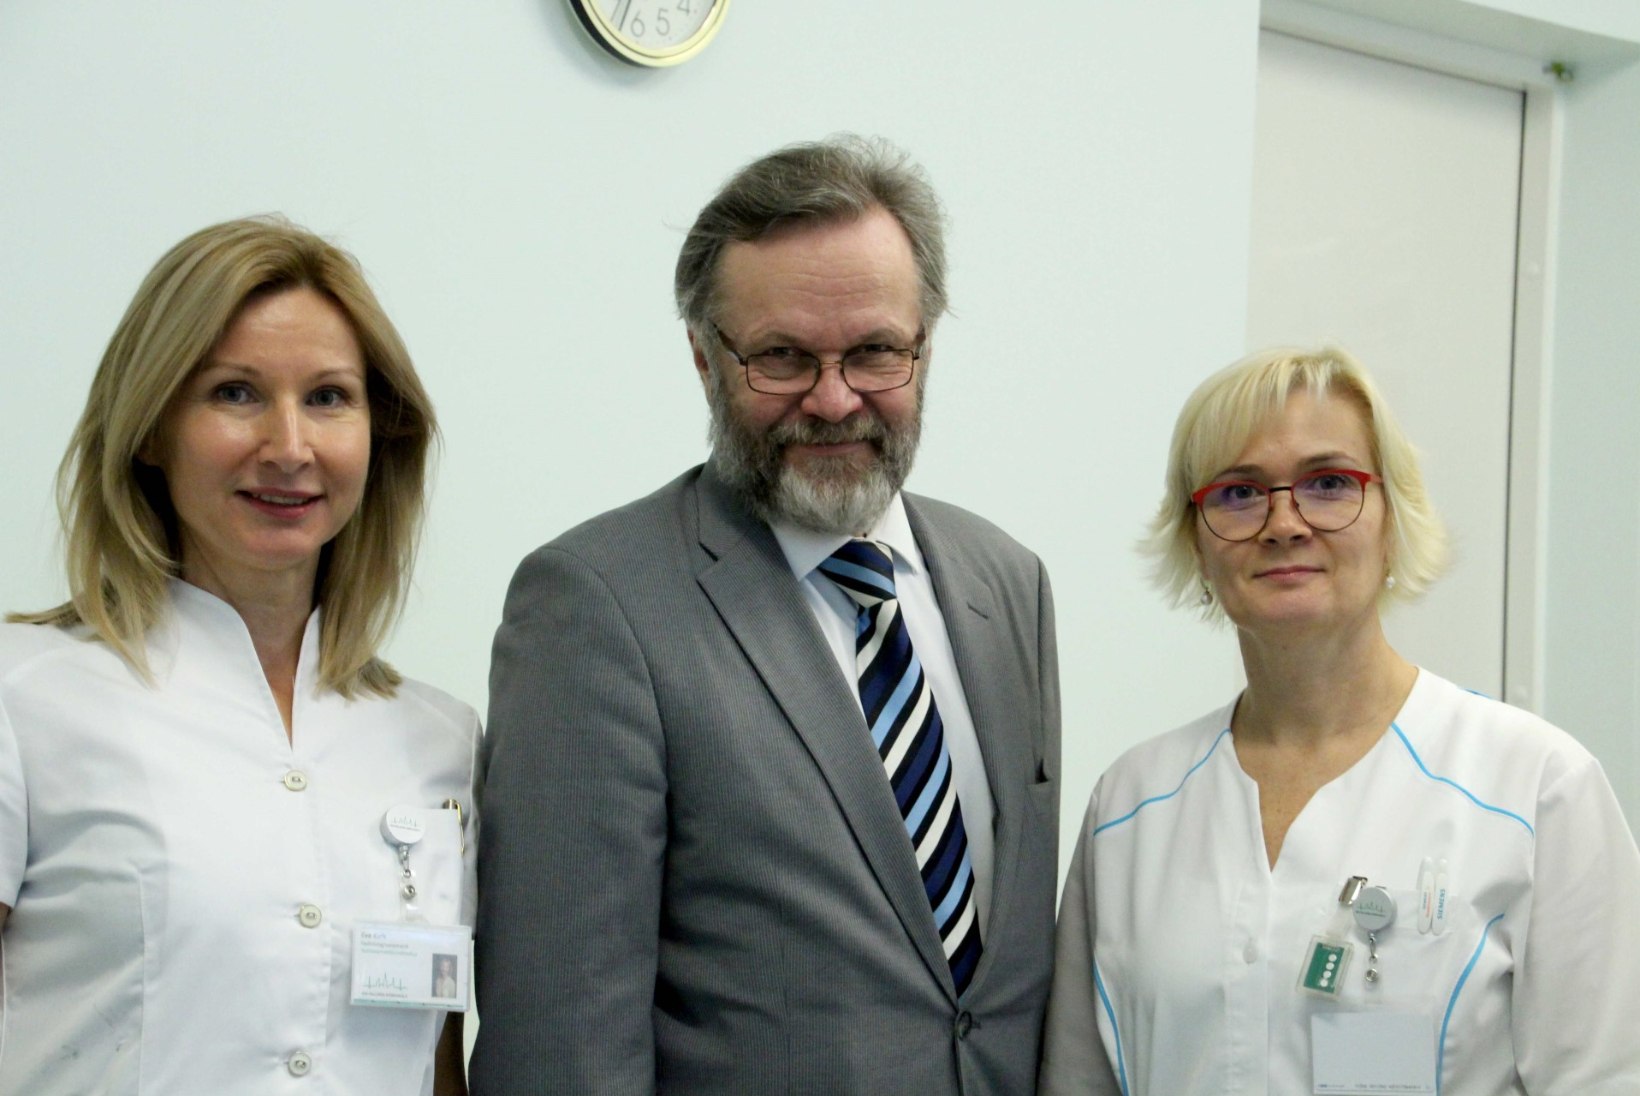 Ida-Tallinna Keskhaigla alustas uut tüüpi ravi kaugelearenenud eesnäärmevähiga patsientidele